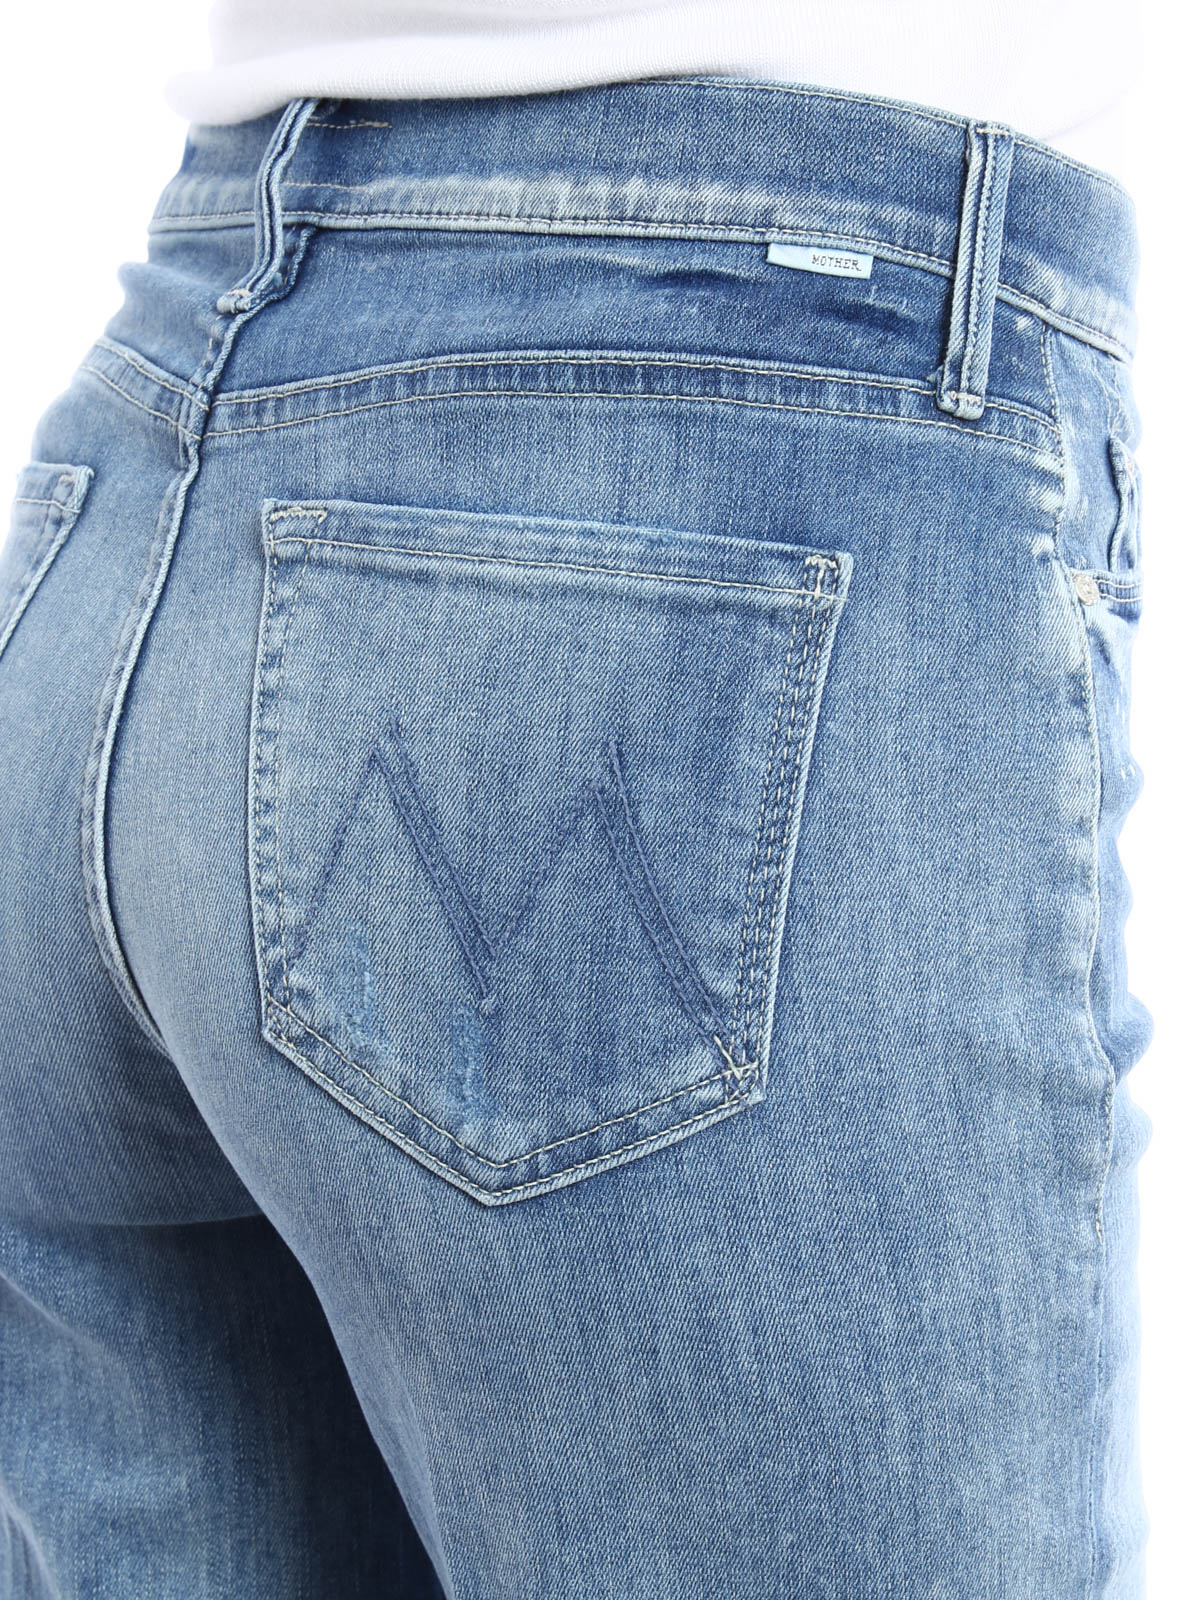 Flared jeans Mother Undone Hem Maverick jeans - 1994173DOUBLETIME